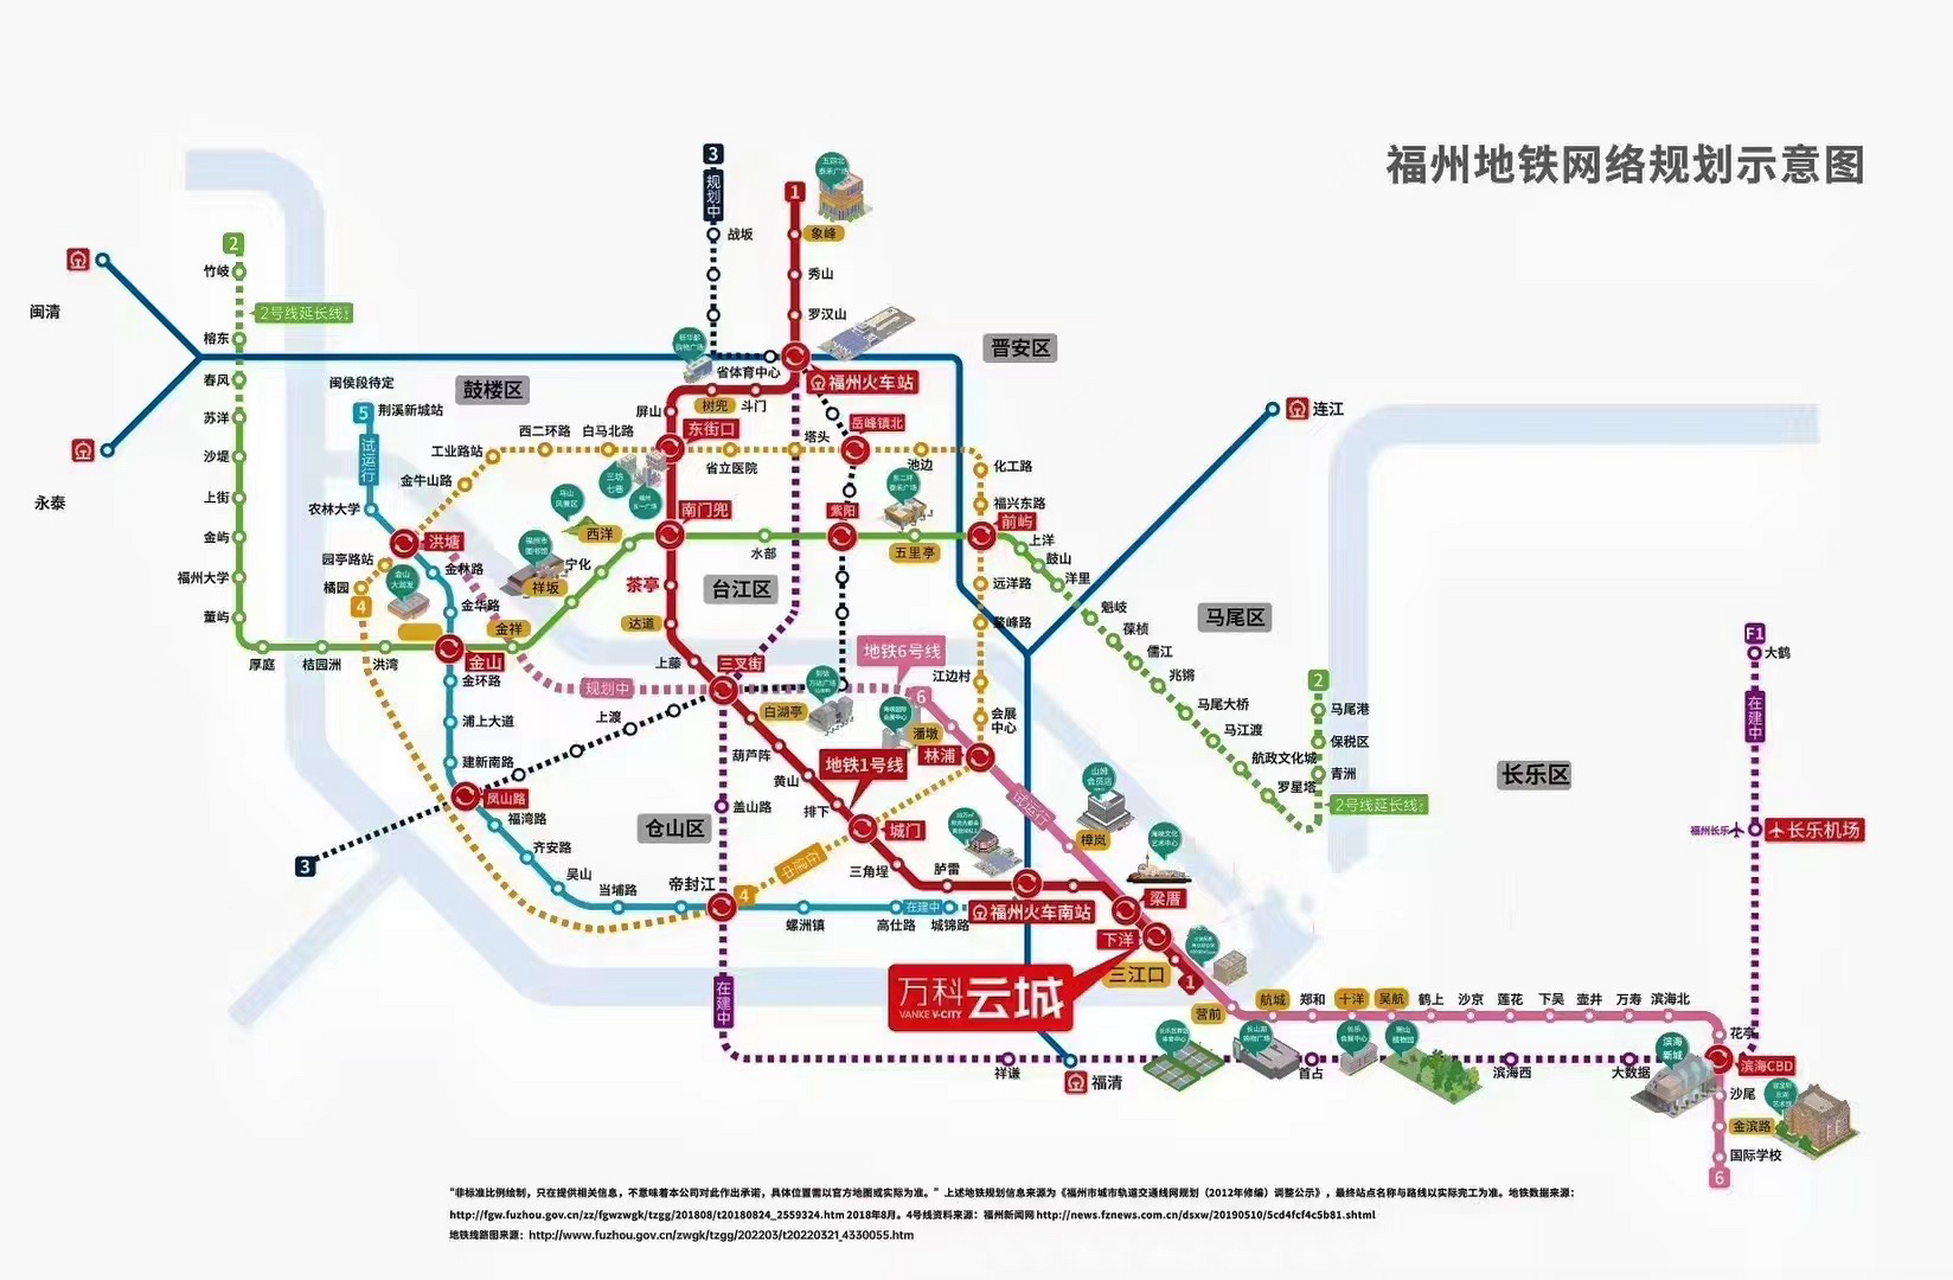 福州地铁网一览图 01福州地铁网一览图 ①号线主城竖中轴线 ②号线